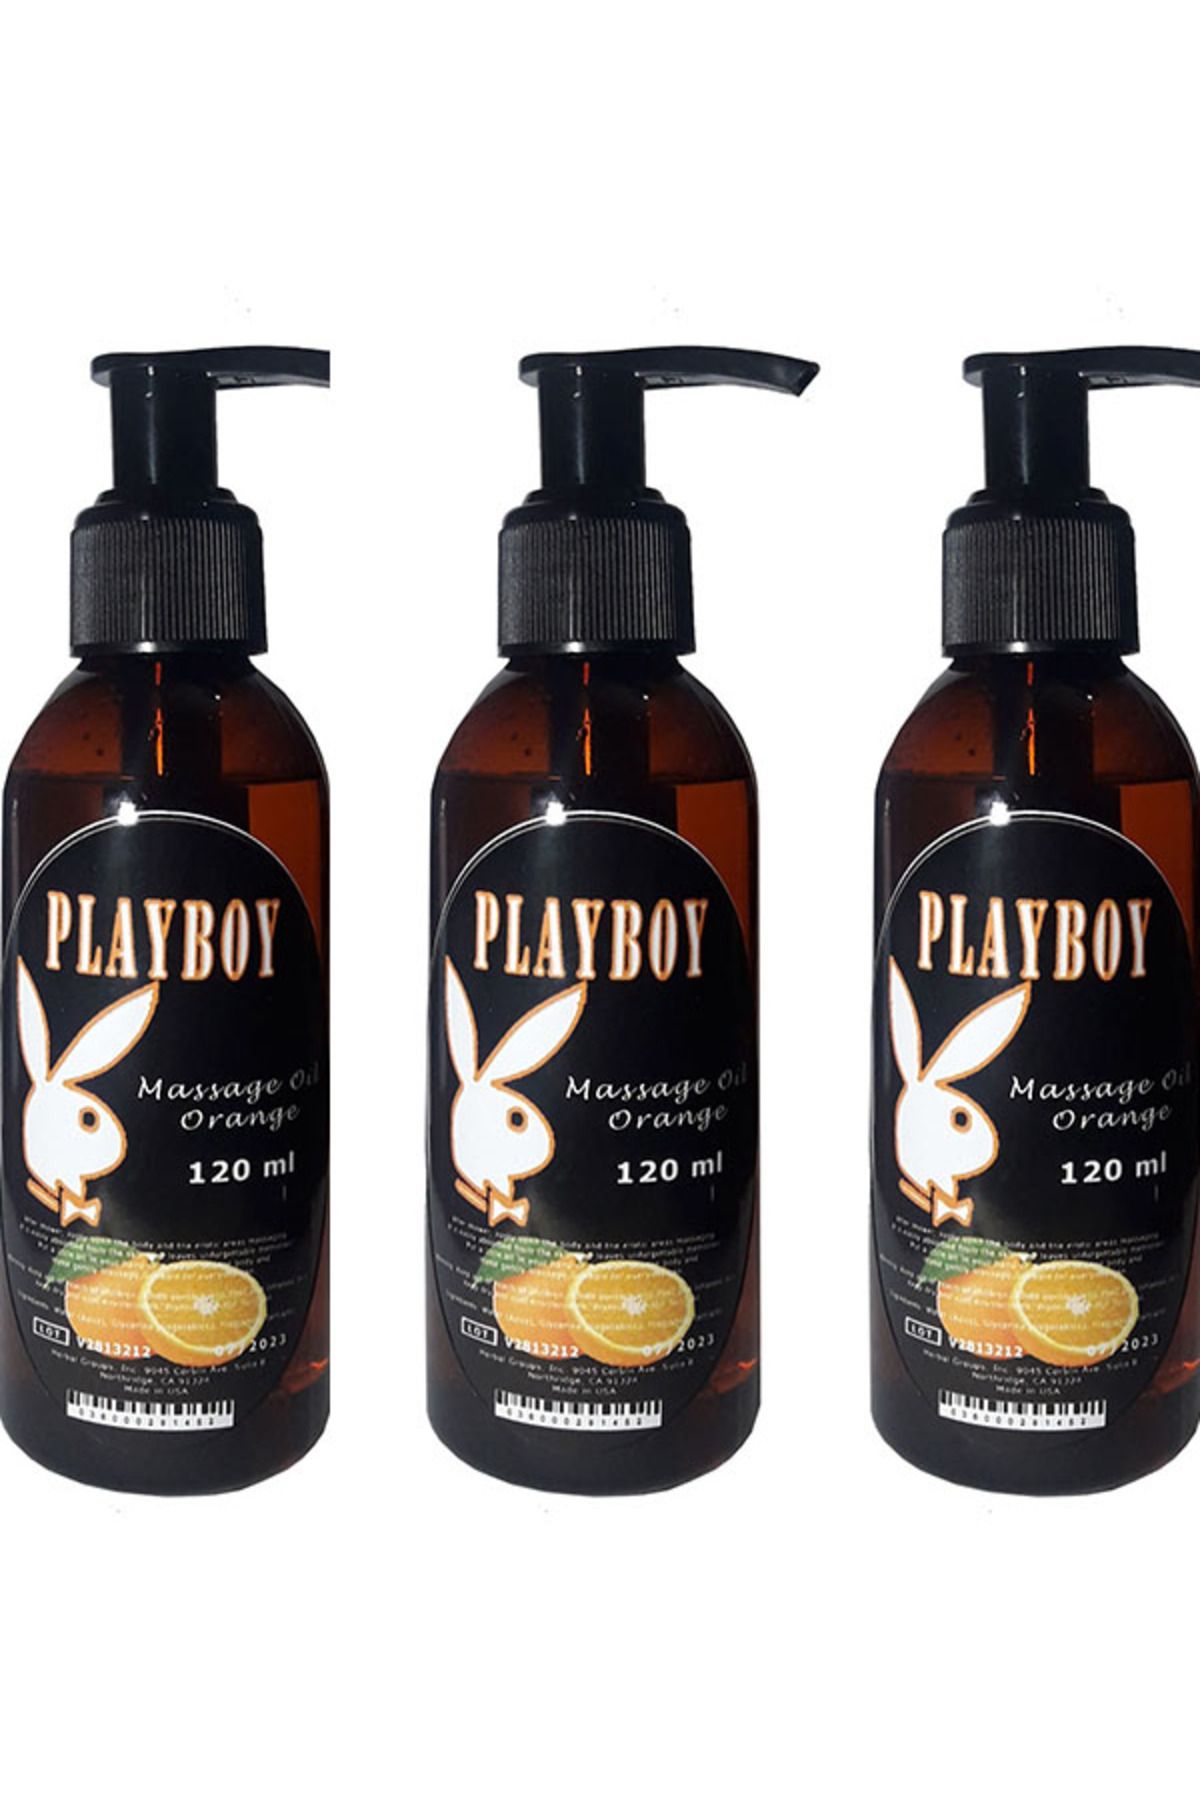 Playboy Portakal Aromalı Vücut Masaj Yağı 120 ml X 3 ad